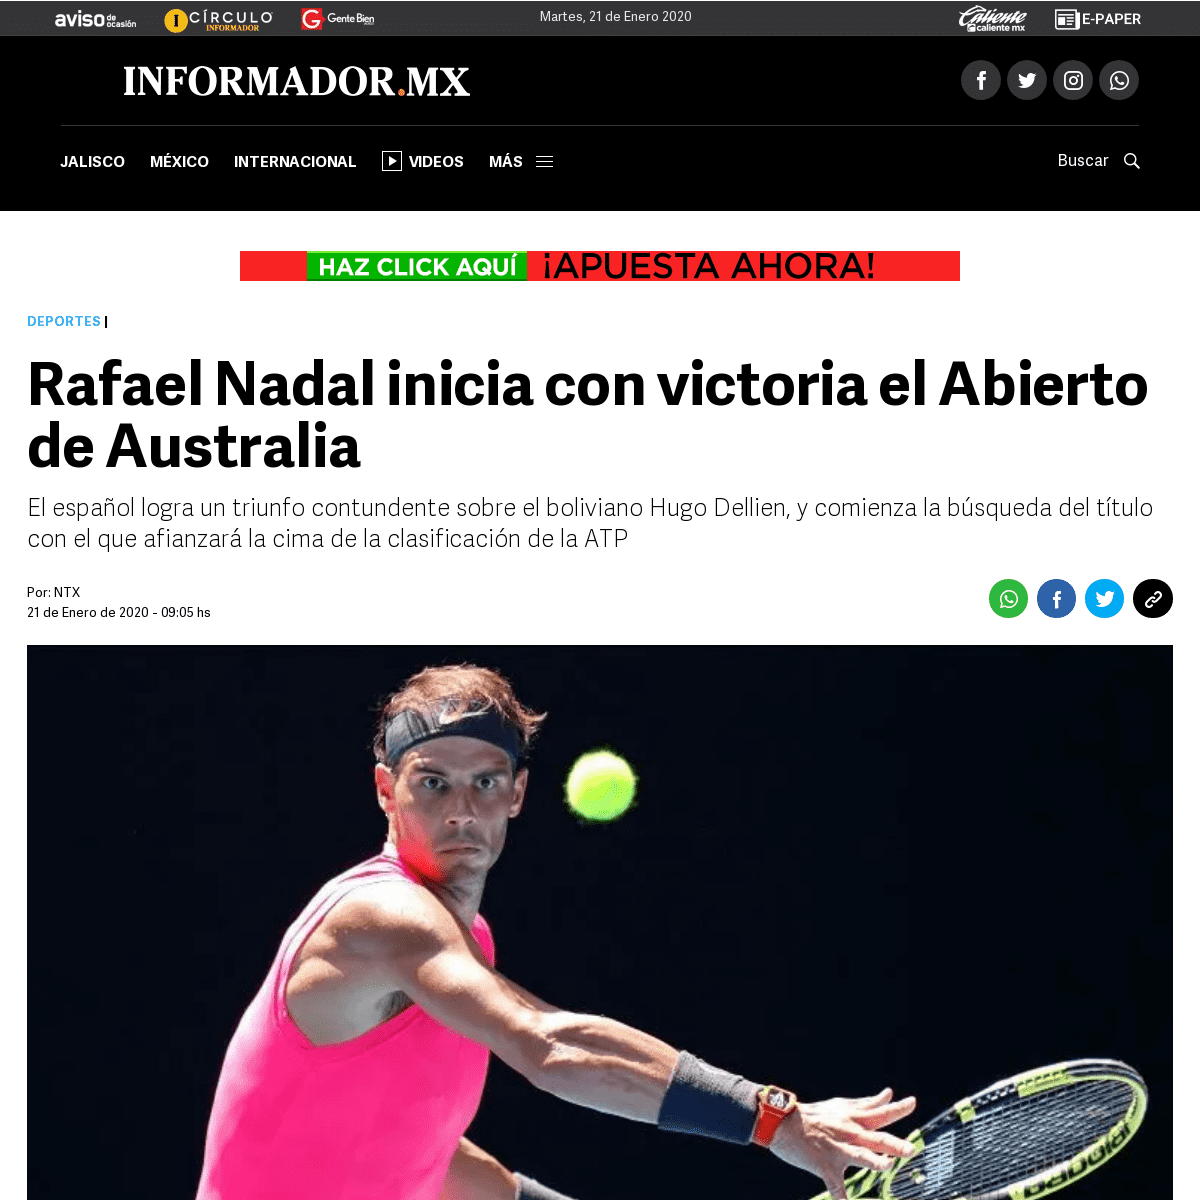 A complete backup of www.informador.mx/deportes/Rafael-Nadal-inicia-con-victoria-el-Abierto-de-Australia-20200121-0052.html